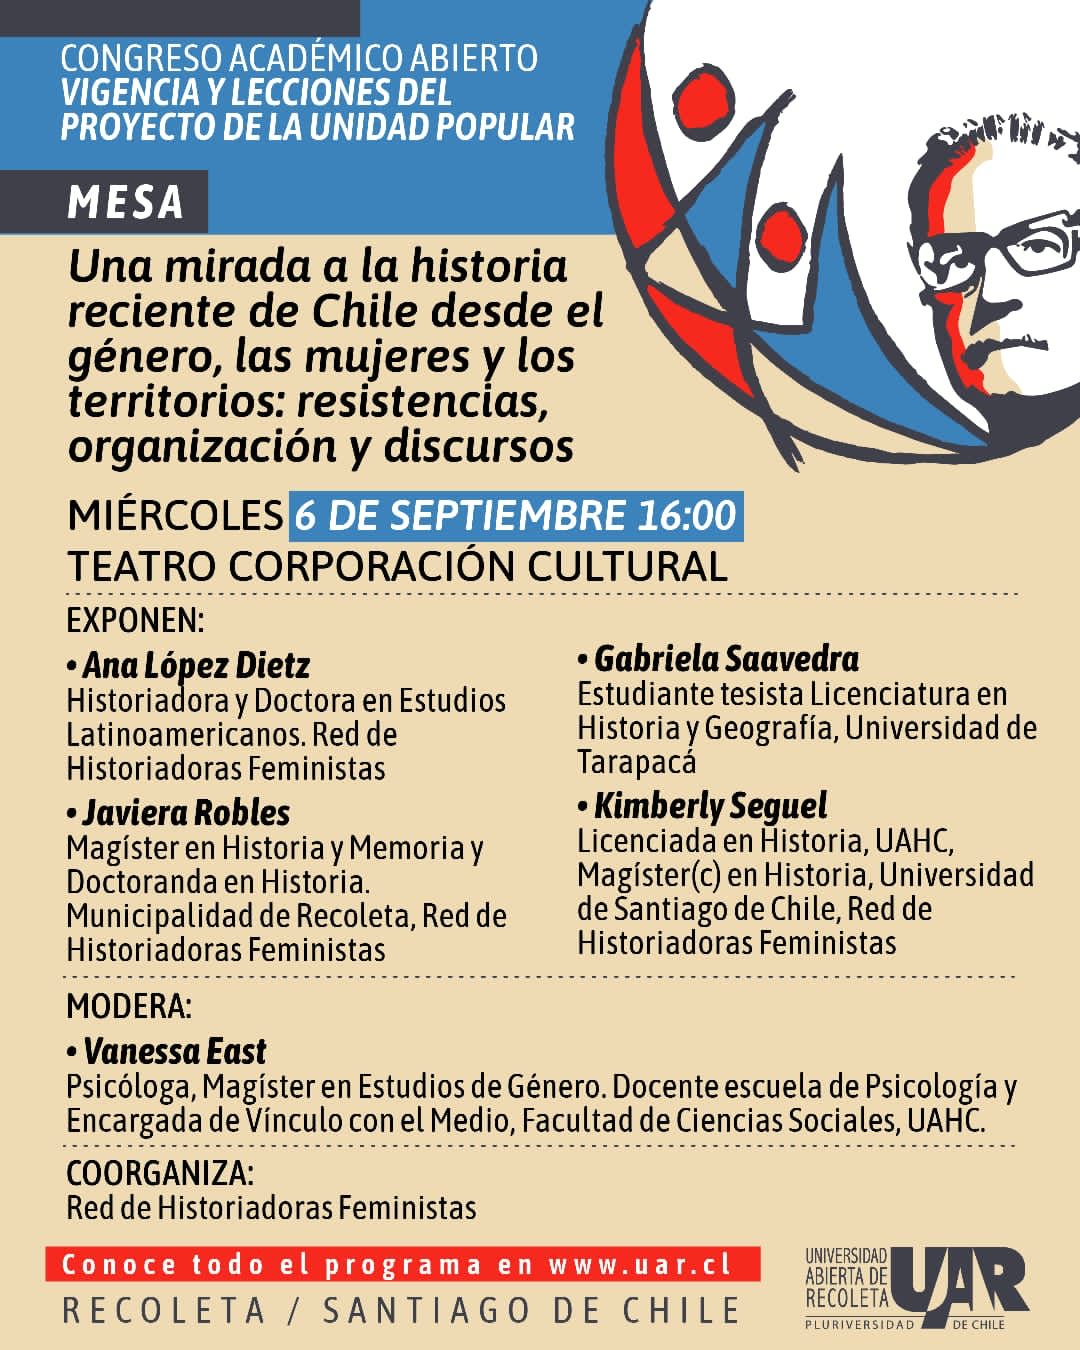 Invitación al Congreso por los 50 años del Golpe de Estado en Chile, coorganiza Red de Historiadoras Feministas